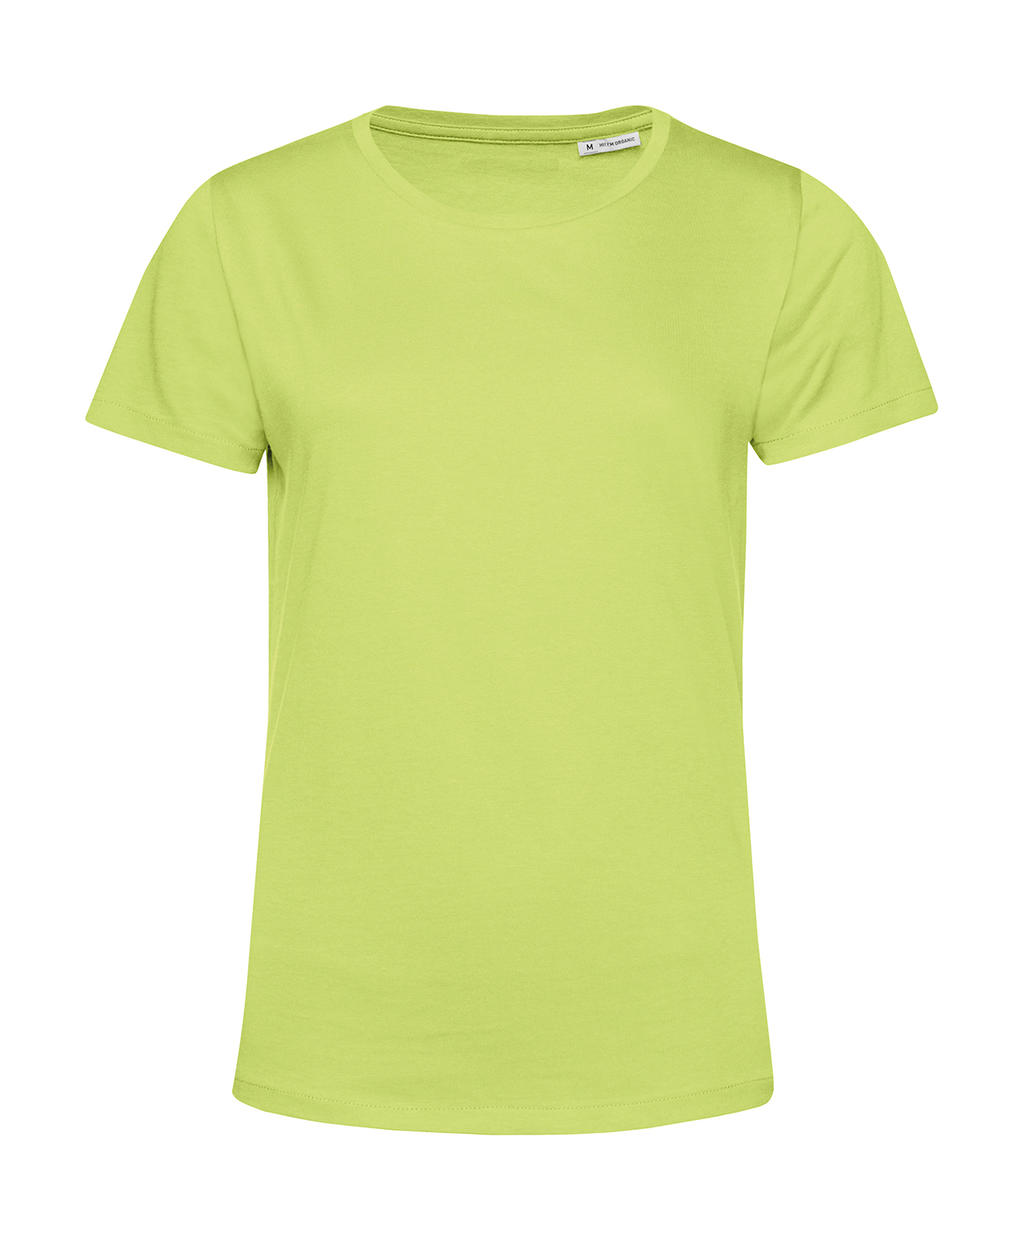 Tričko dámské BC Organic Inspire E150 - světle zelené, M